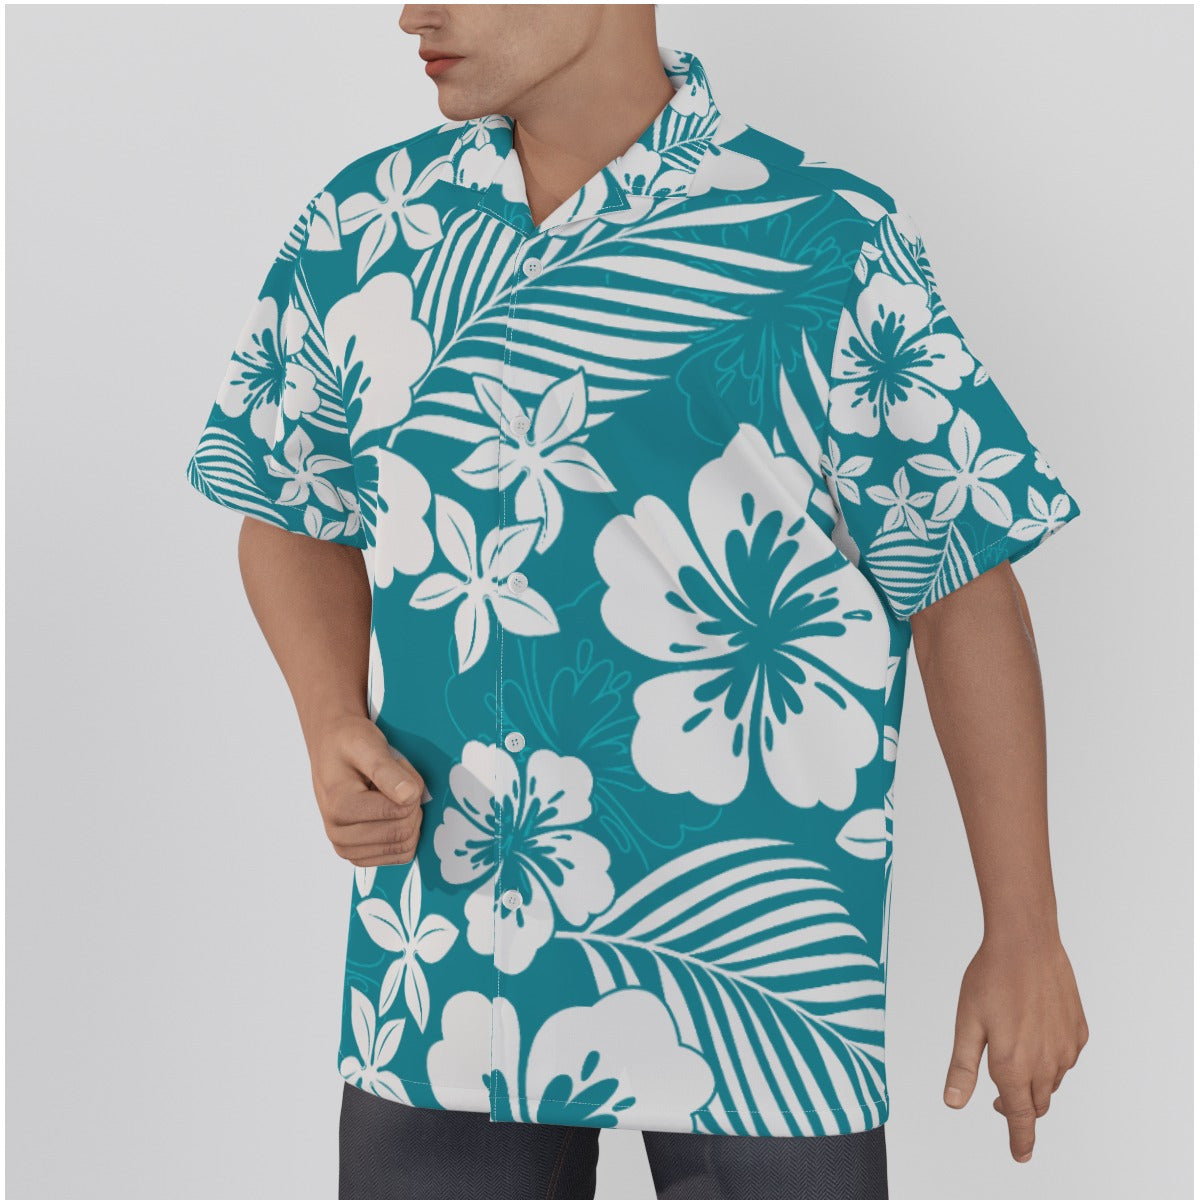 Tropical Tennis Hawaiian Shirt Gift For Men and Women Beach Shirt Gifts  Summer (